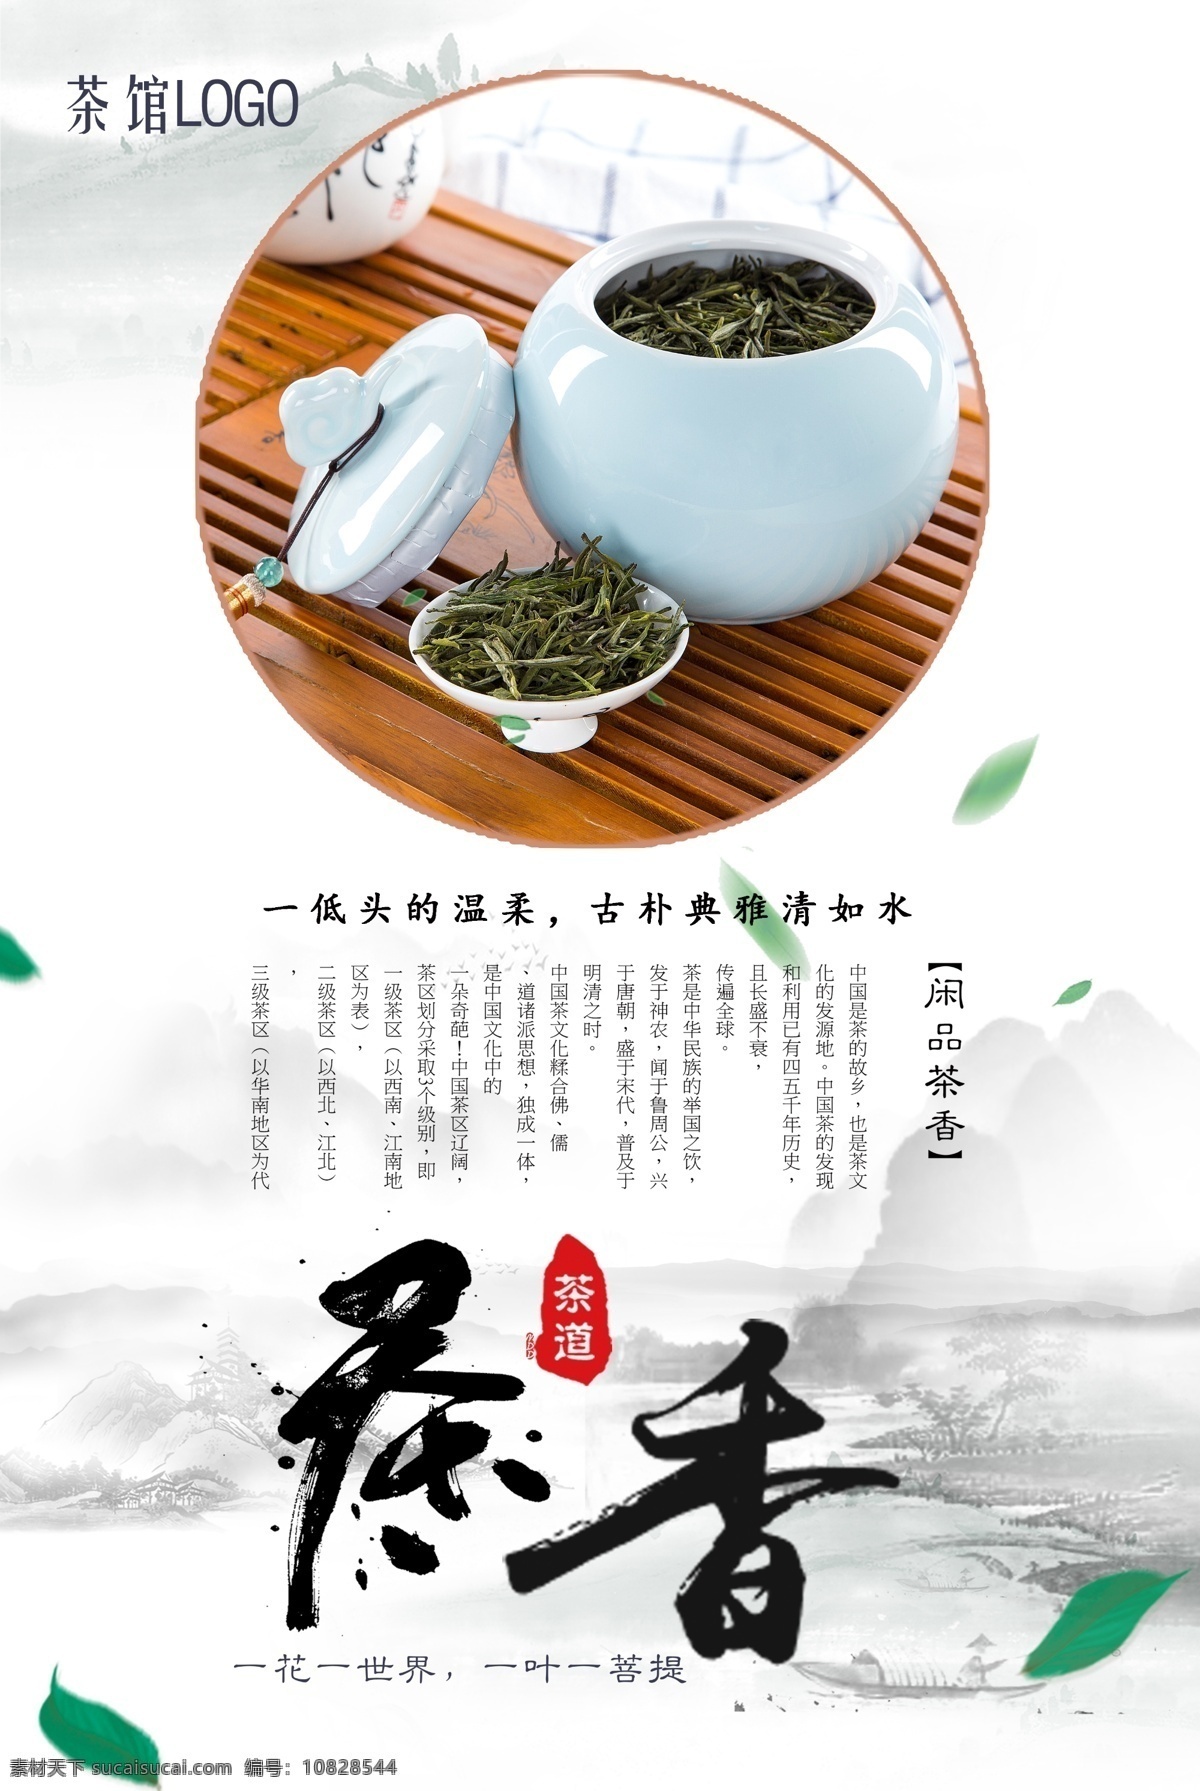 茶文化 海报 分层 中国茶文化 茶道 中华文化 传统文化 茶艺 春暖茶香 人生如茶 茶道人生 品茶 茶馆 茶社 茶韵 茶香